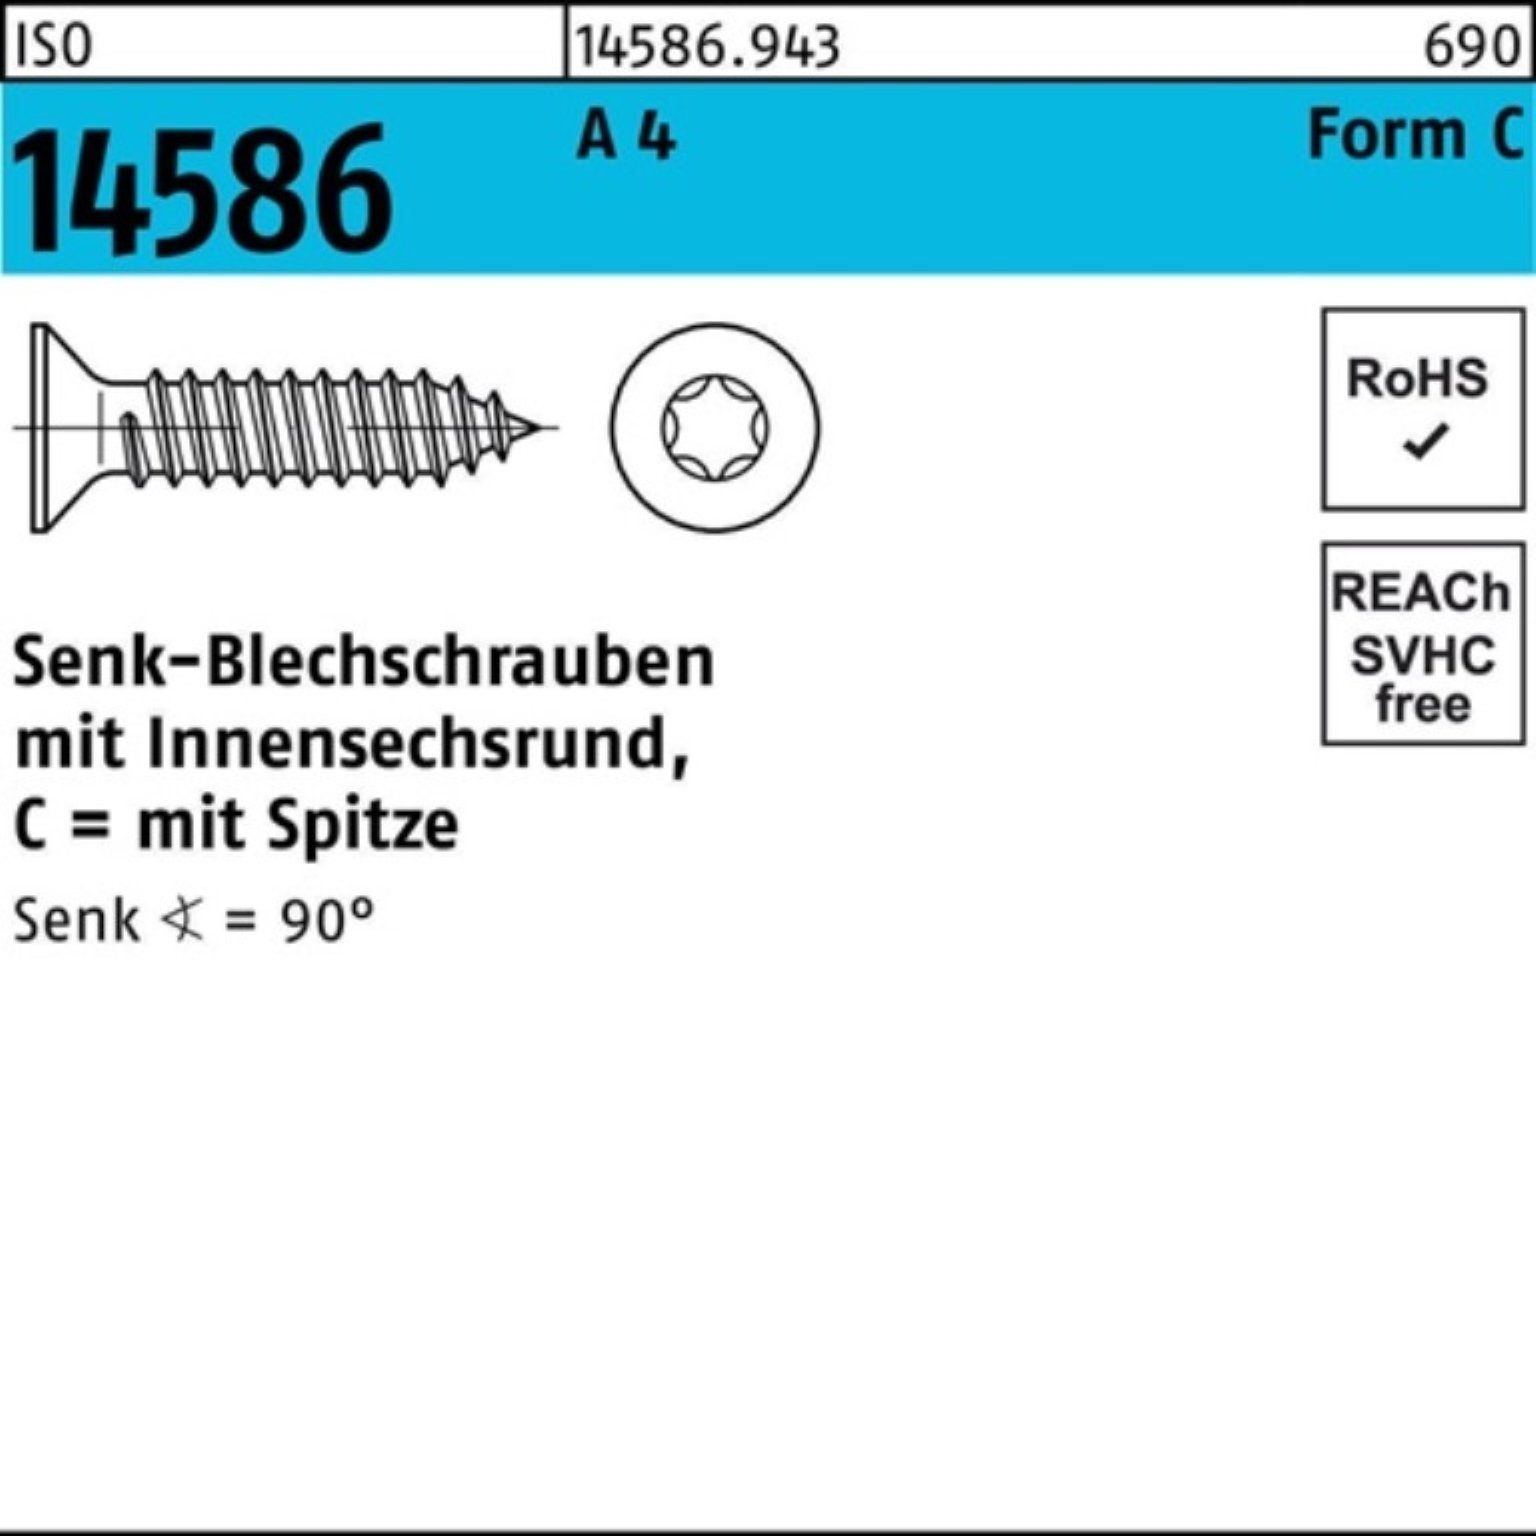 10 A Senkblechschraube 1000er ISO Schraube 4 14586 9,5-T20 4,2x ISR/Spitze Reyher Pack